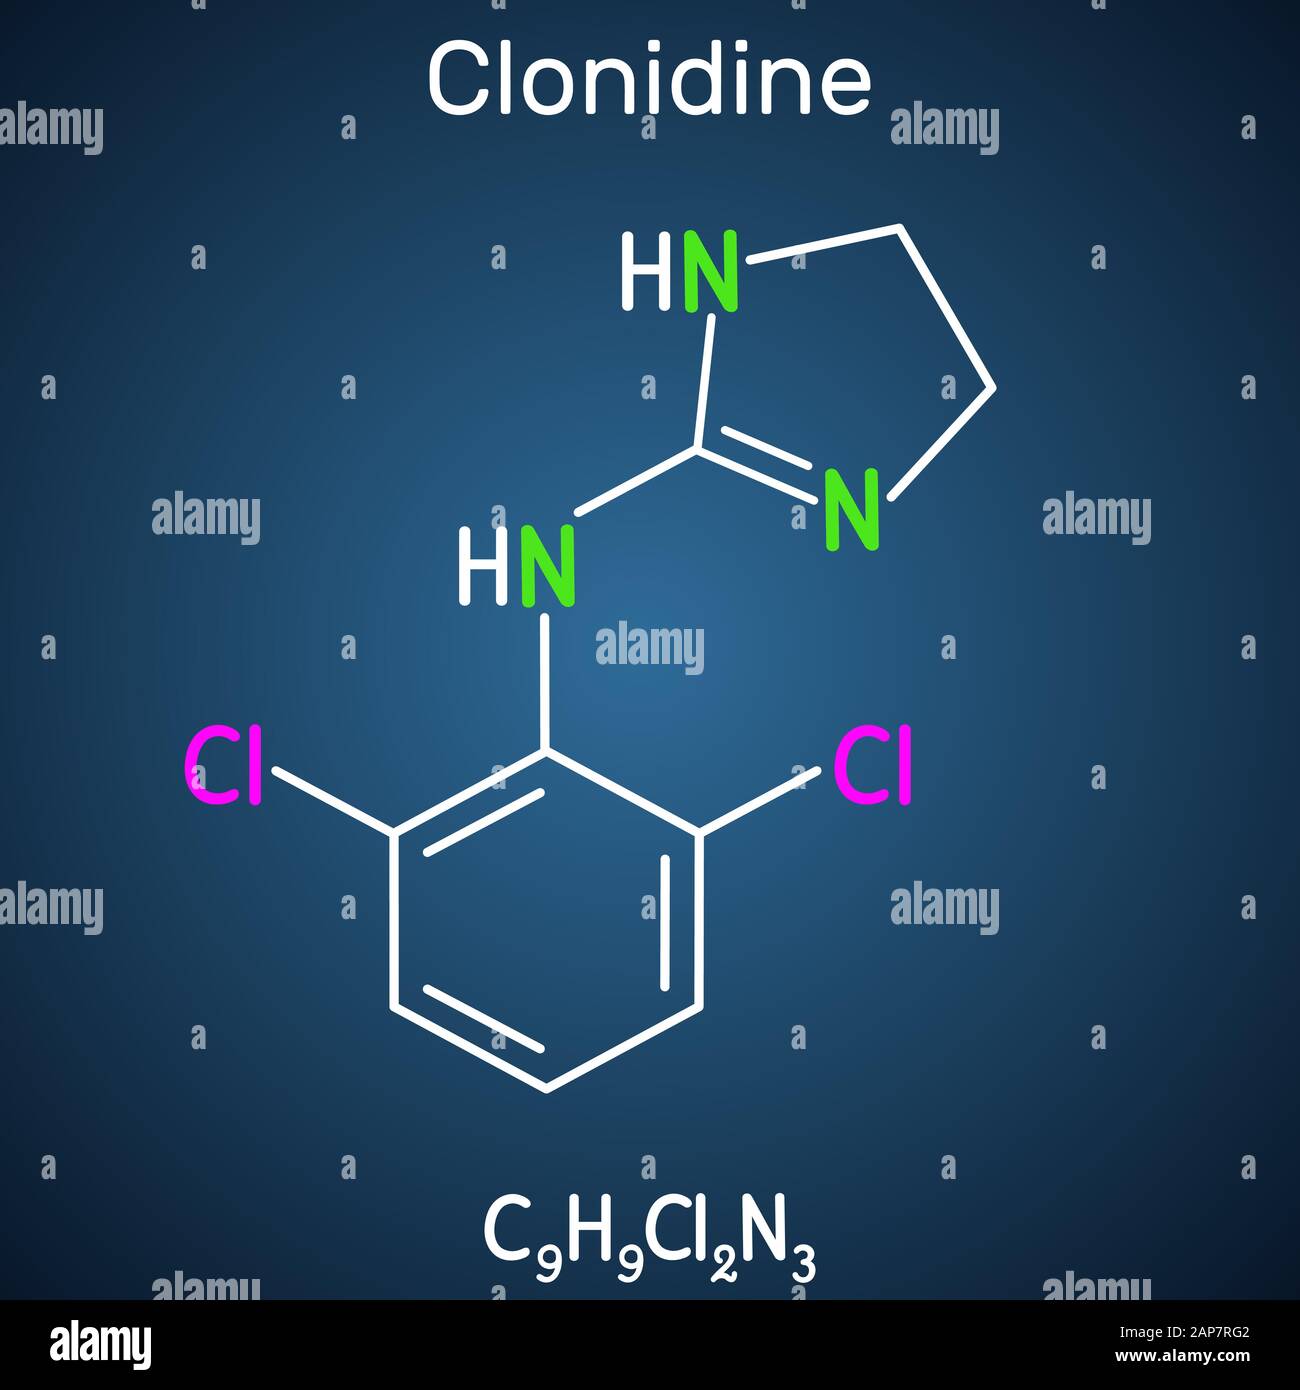 Clonidin-Molekül. Es ist nützlich für die Behandlung von Bluthochdruck, starken Schmerzen und ADHS. Strukturelle chemische Formel auf dem dunkelblauen Hintergrund. Ve Stock Vektor